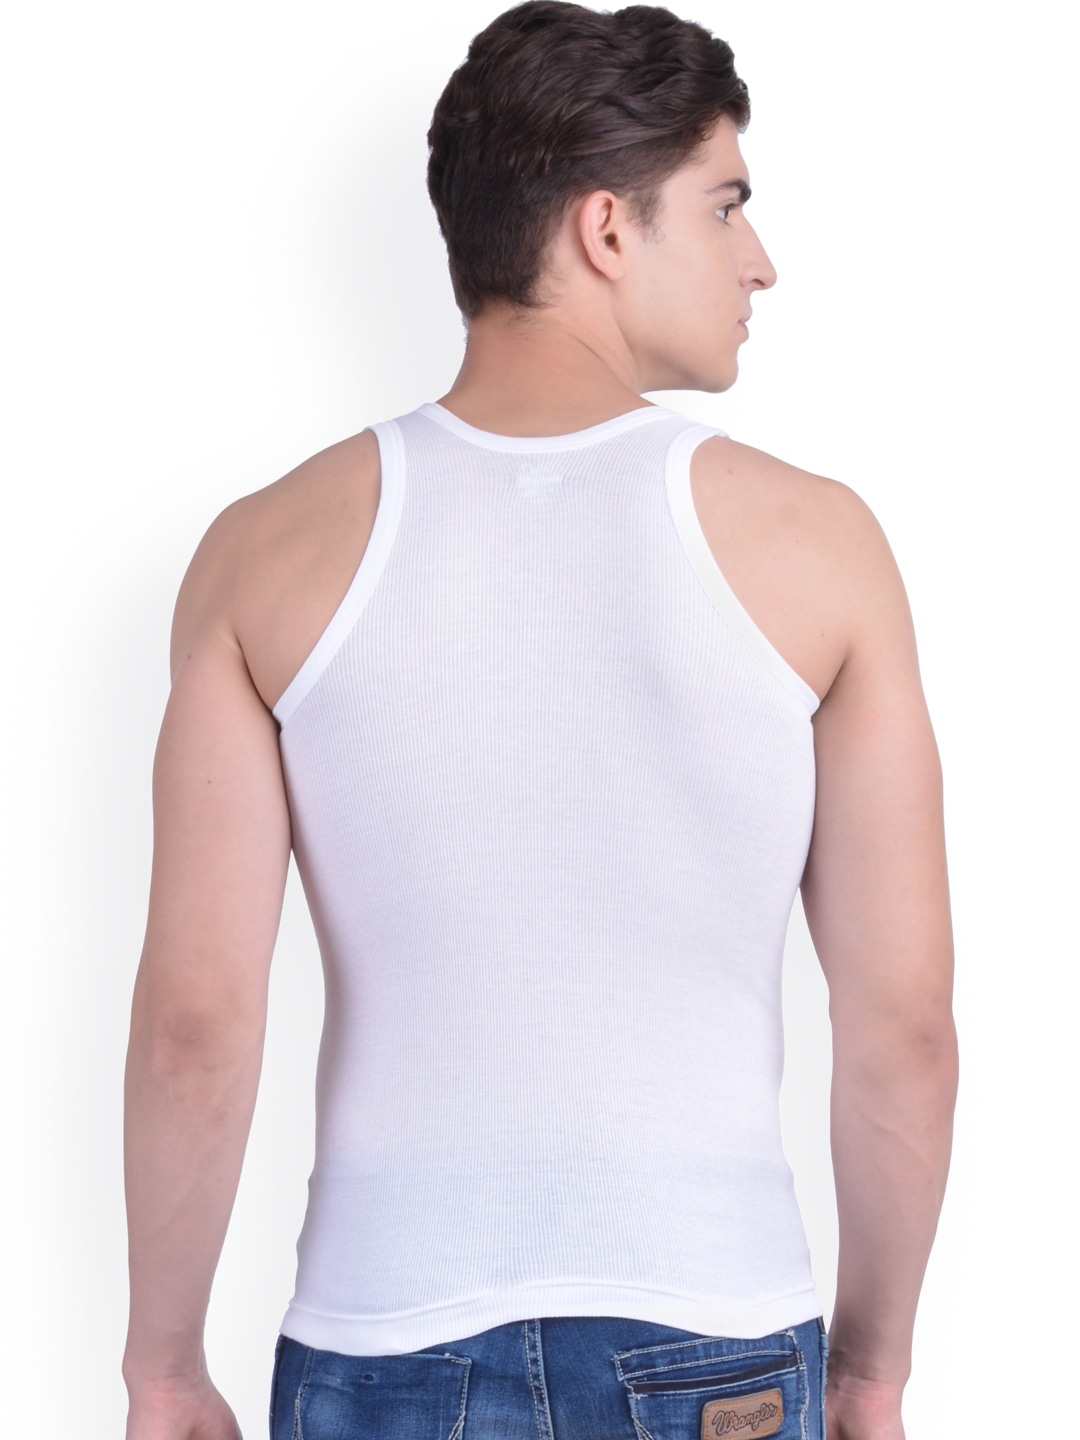 Clothing Innerwear Vests | Dollar Bigboss Pack of 3 Innerwear Vests - UO28441